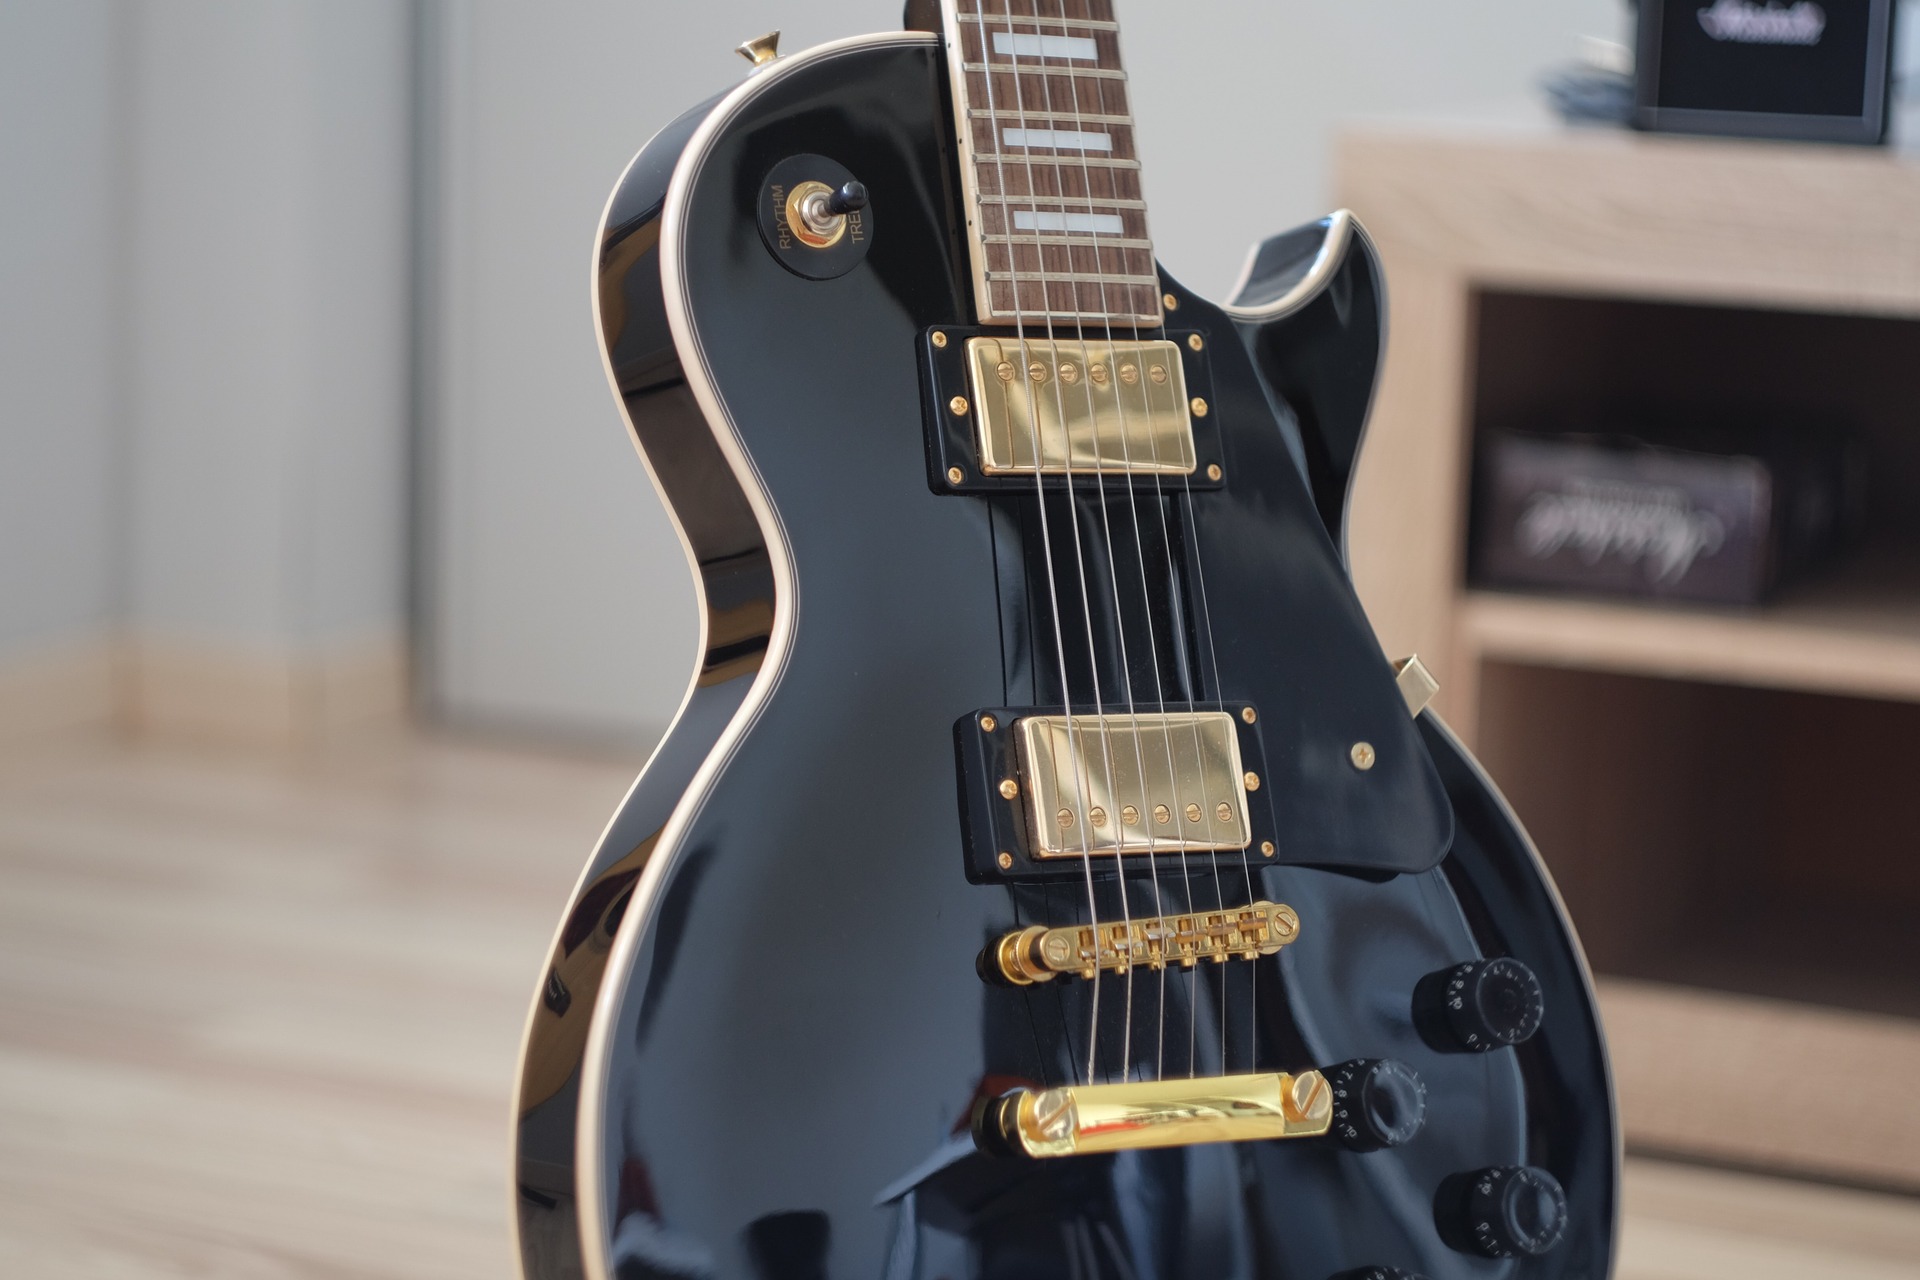 Gibson SG guitar